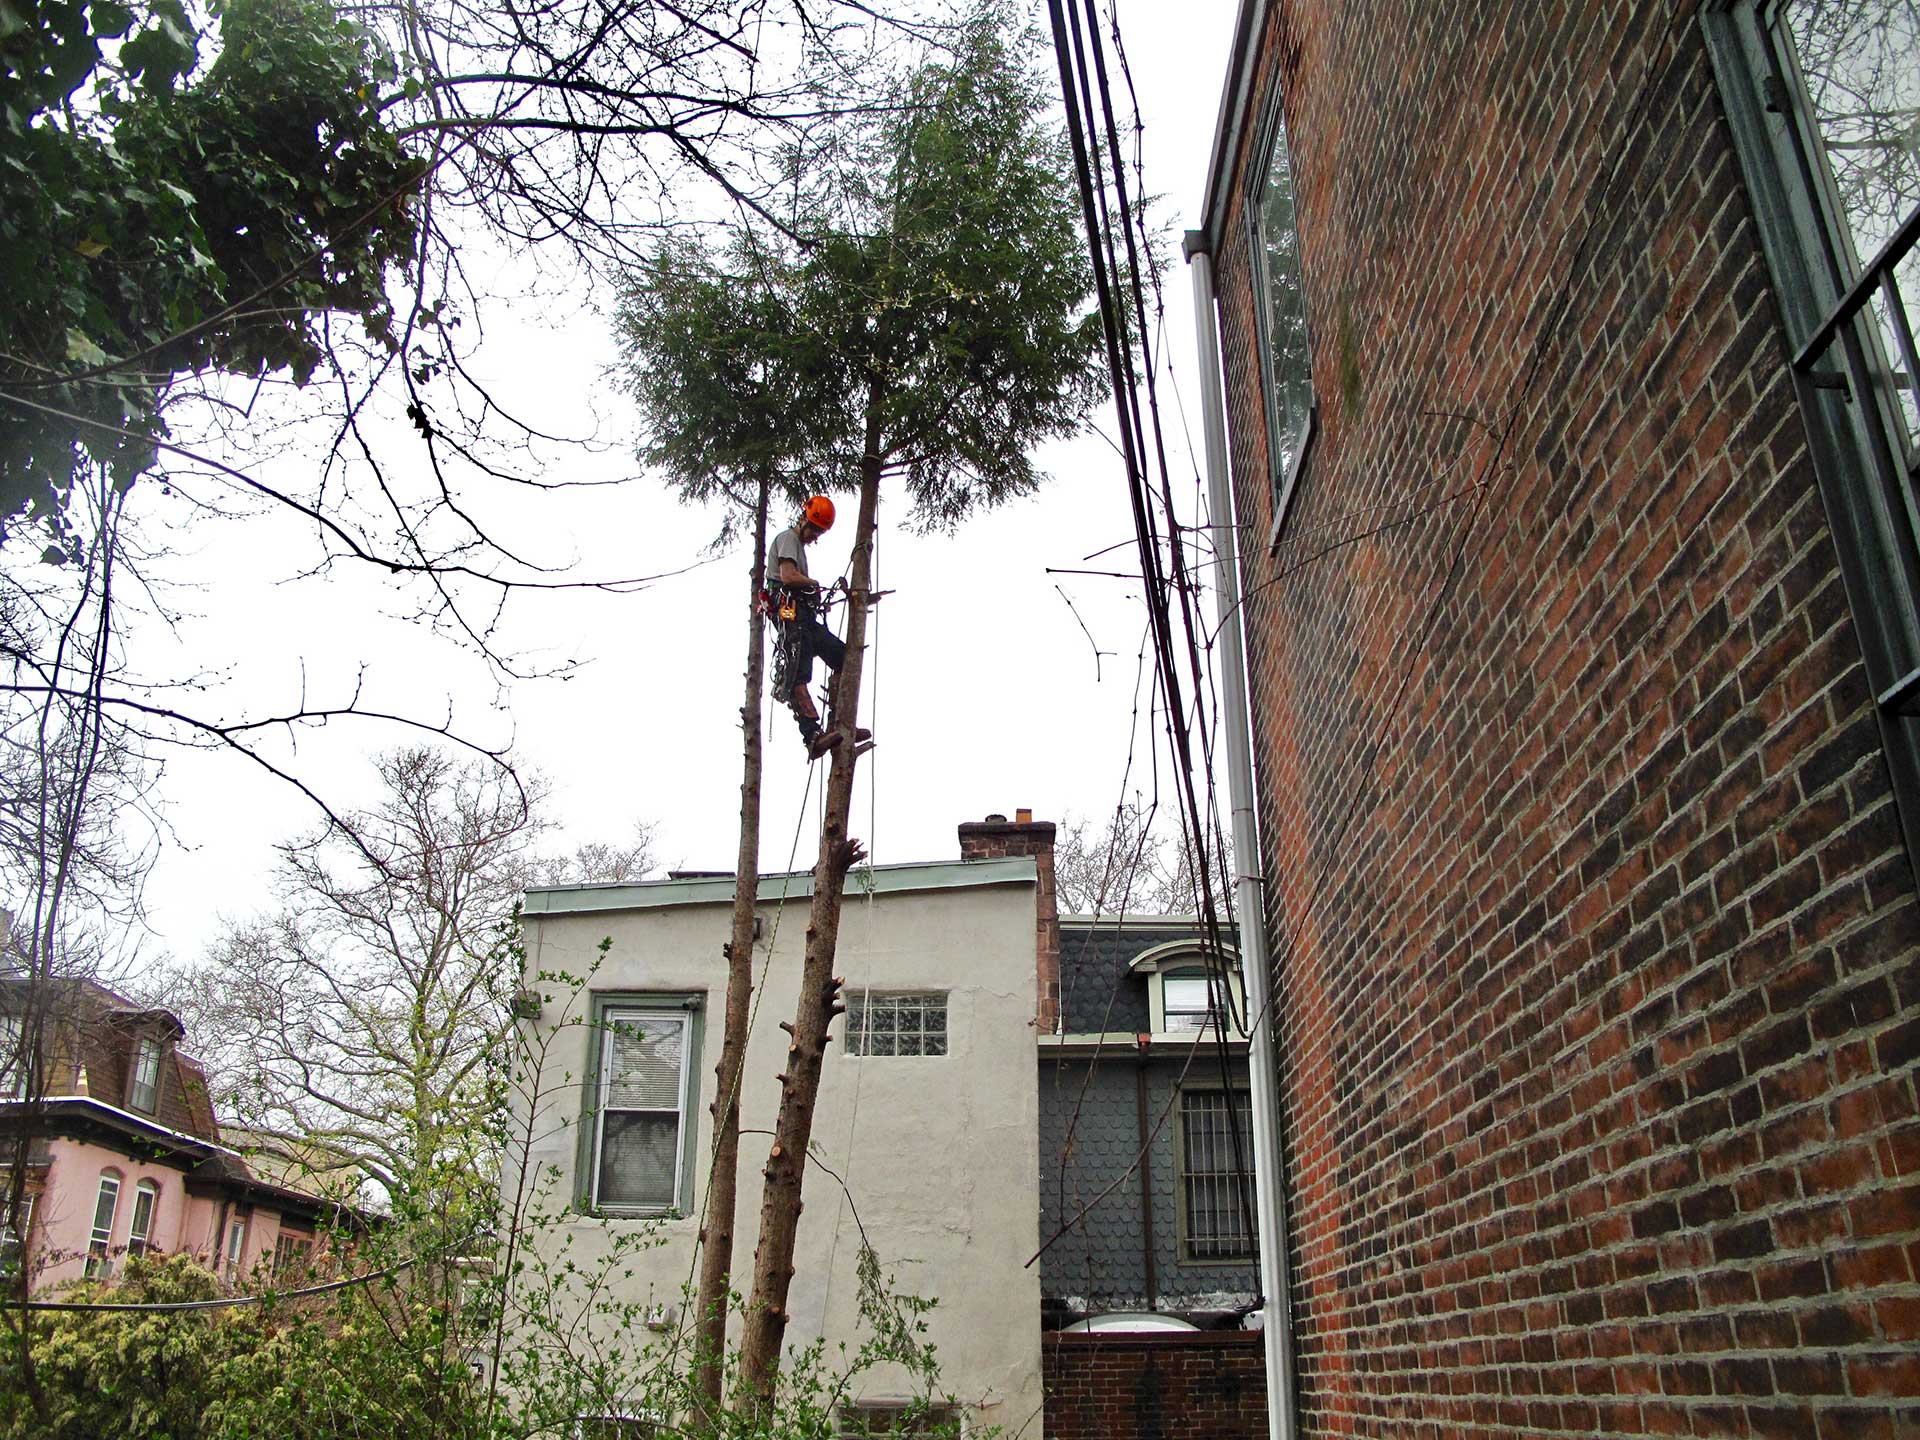 Urban tree pruning